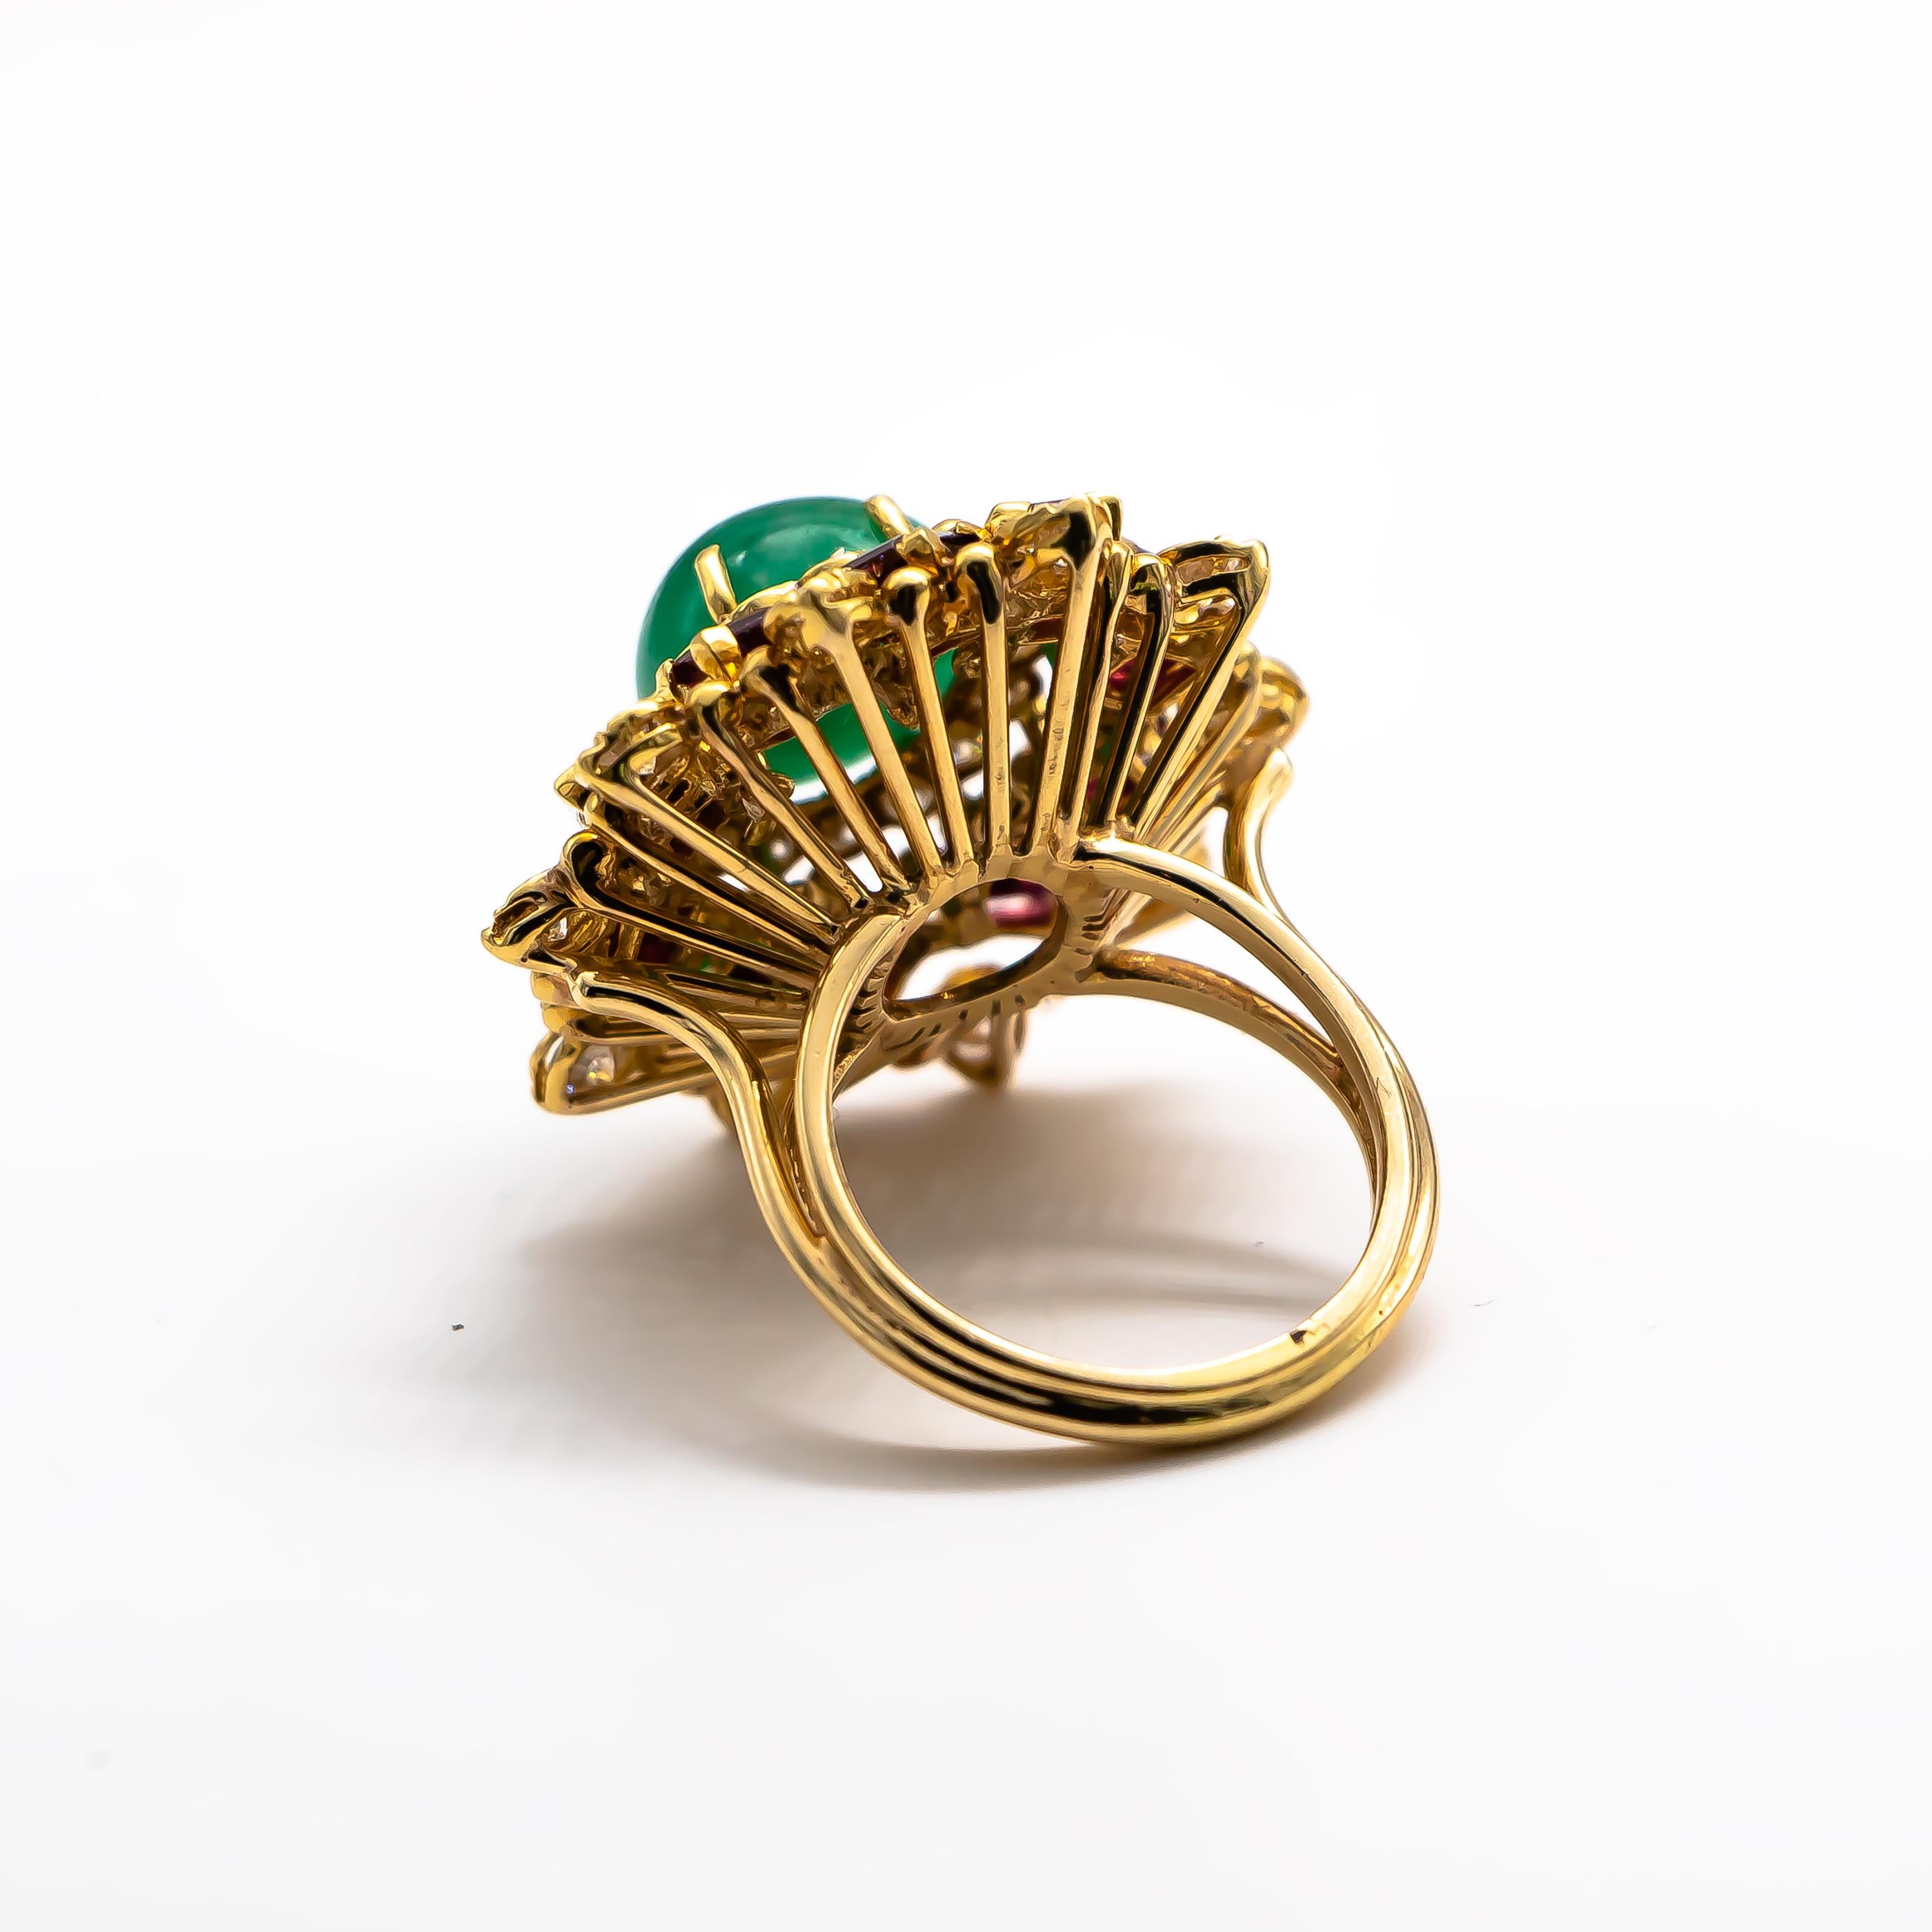 Cabochon Emerald 5 Carat Ring with Rubies 2.4 Carat and Diamonds 1.60 Carat 1